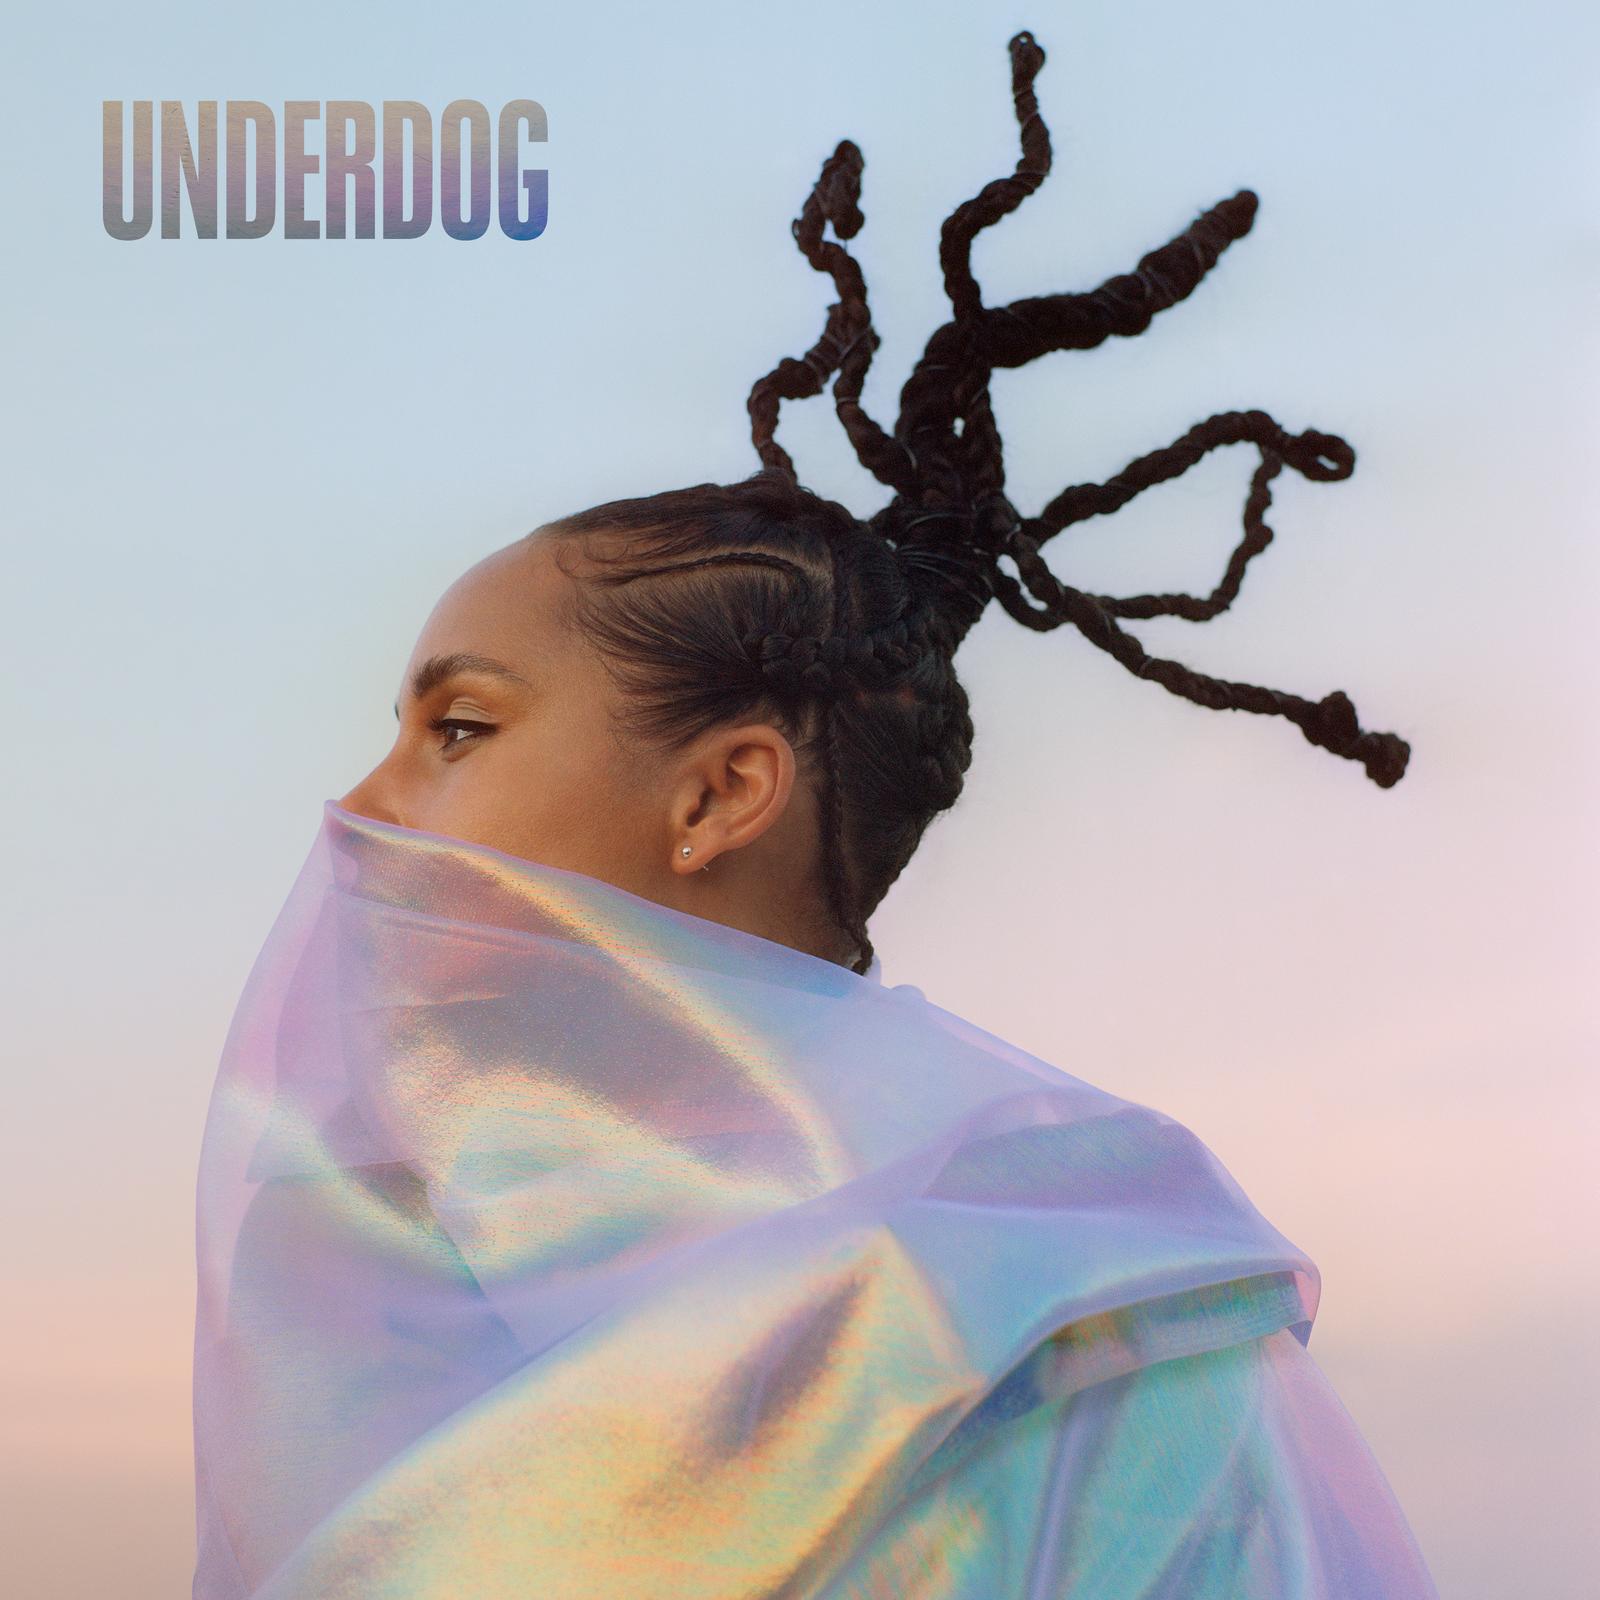 “Underdog”: nuevo sencillo de Alicia Keys, que lanzó a la par del video oficial del mismo